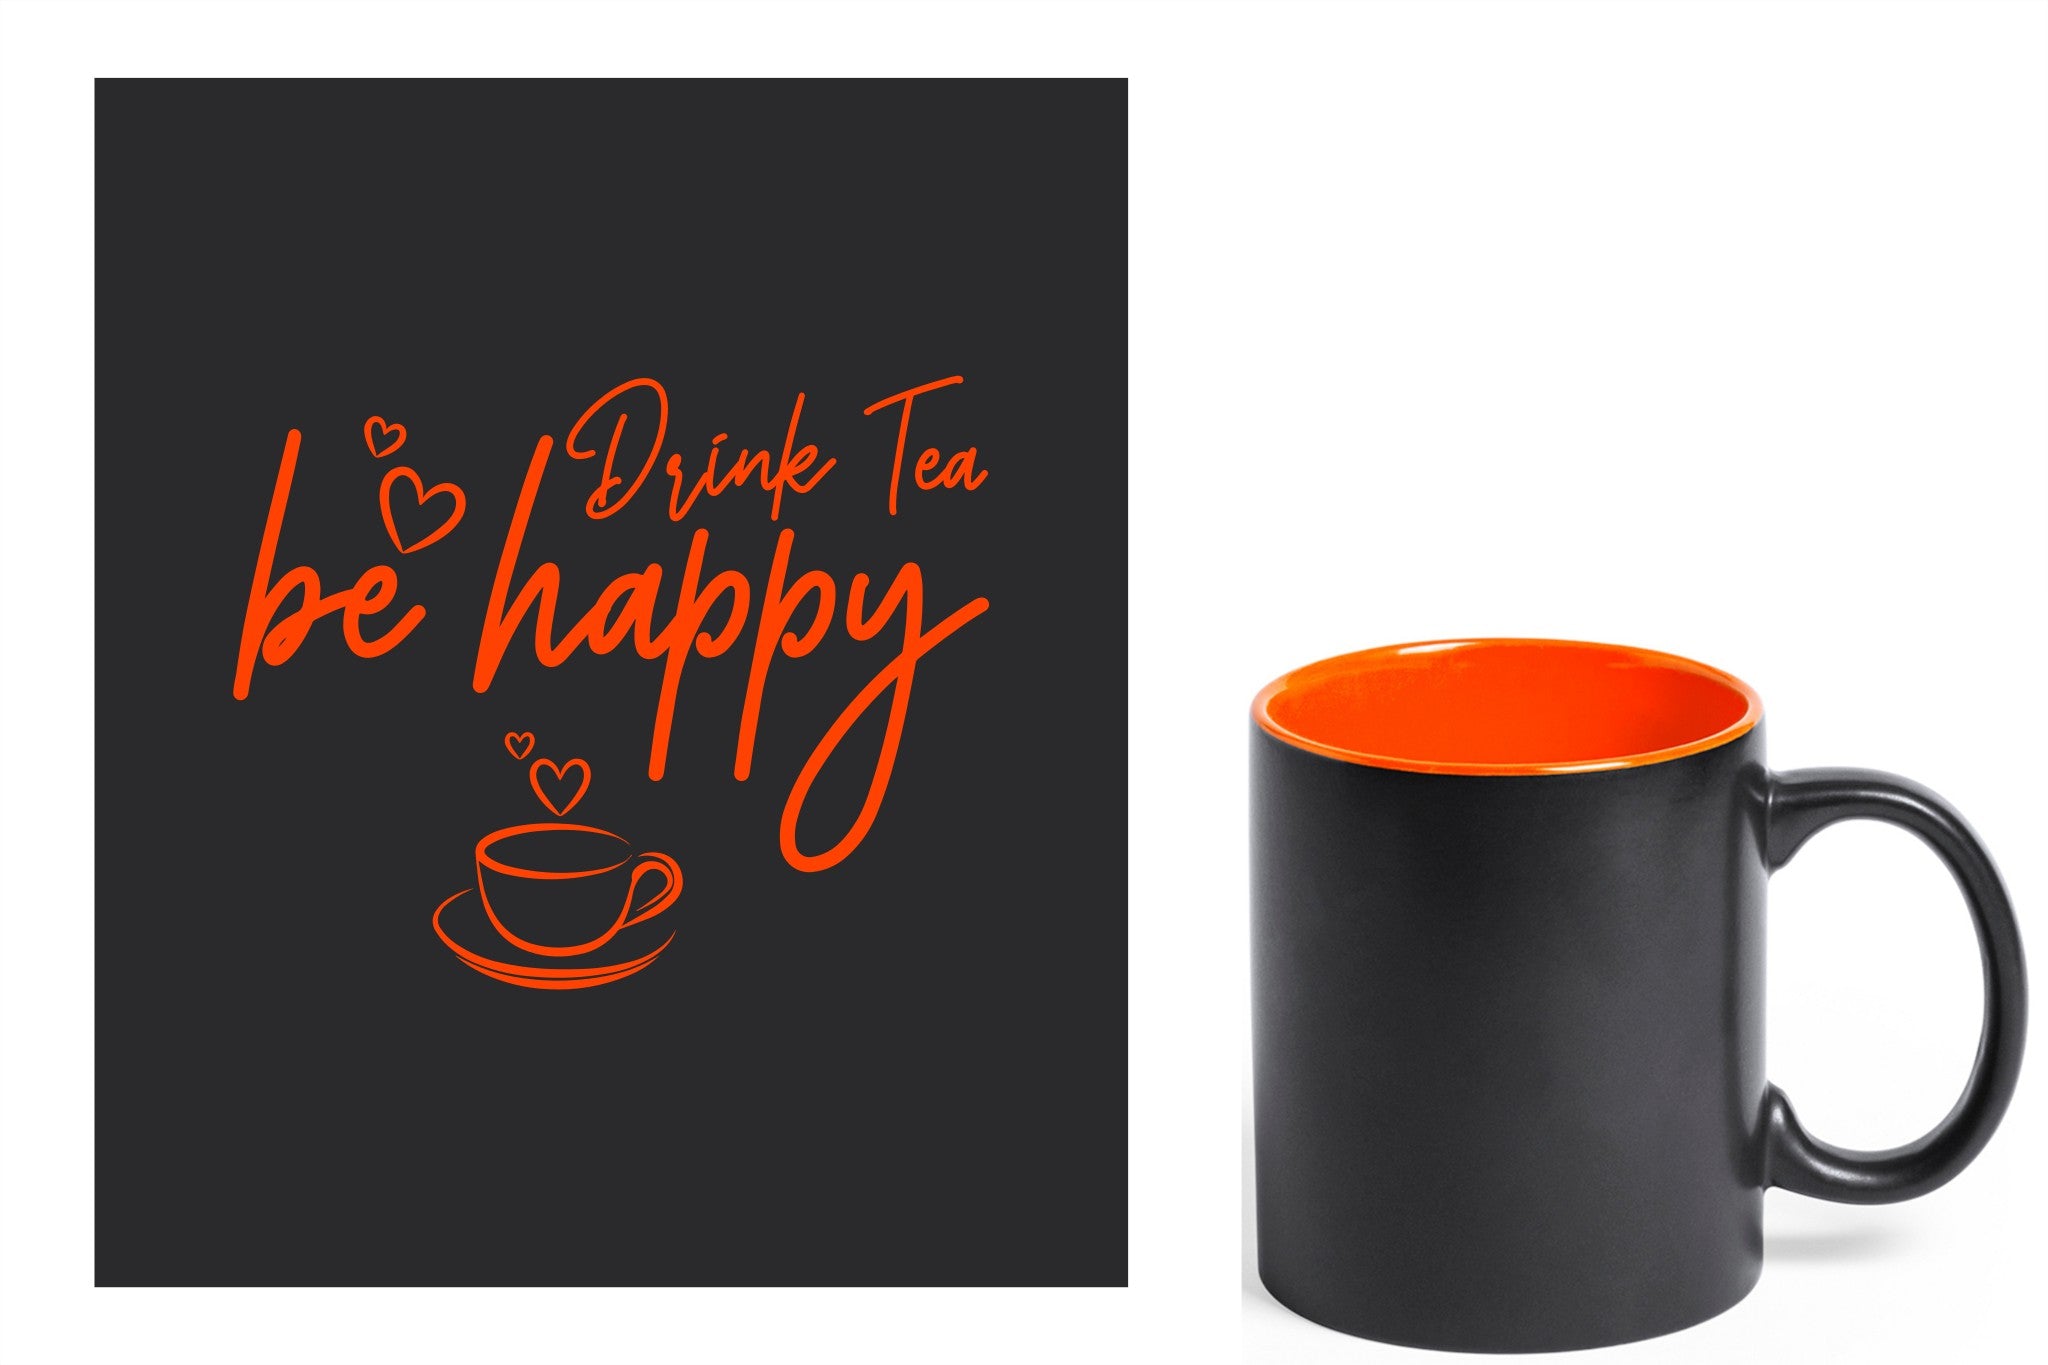 zwarte keramische mok met oranje gravure  'Be happy drink tea'.